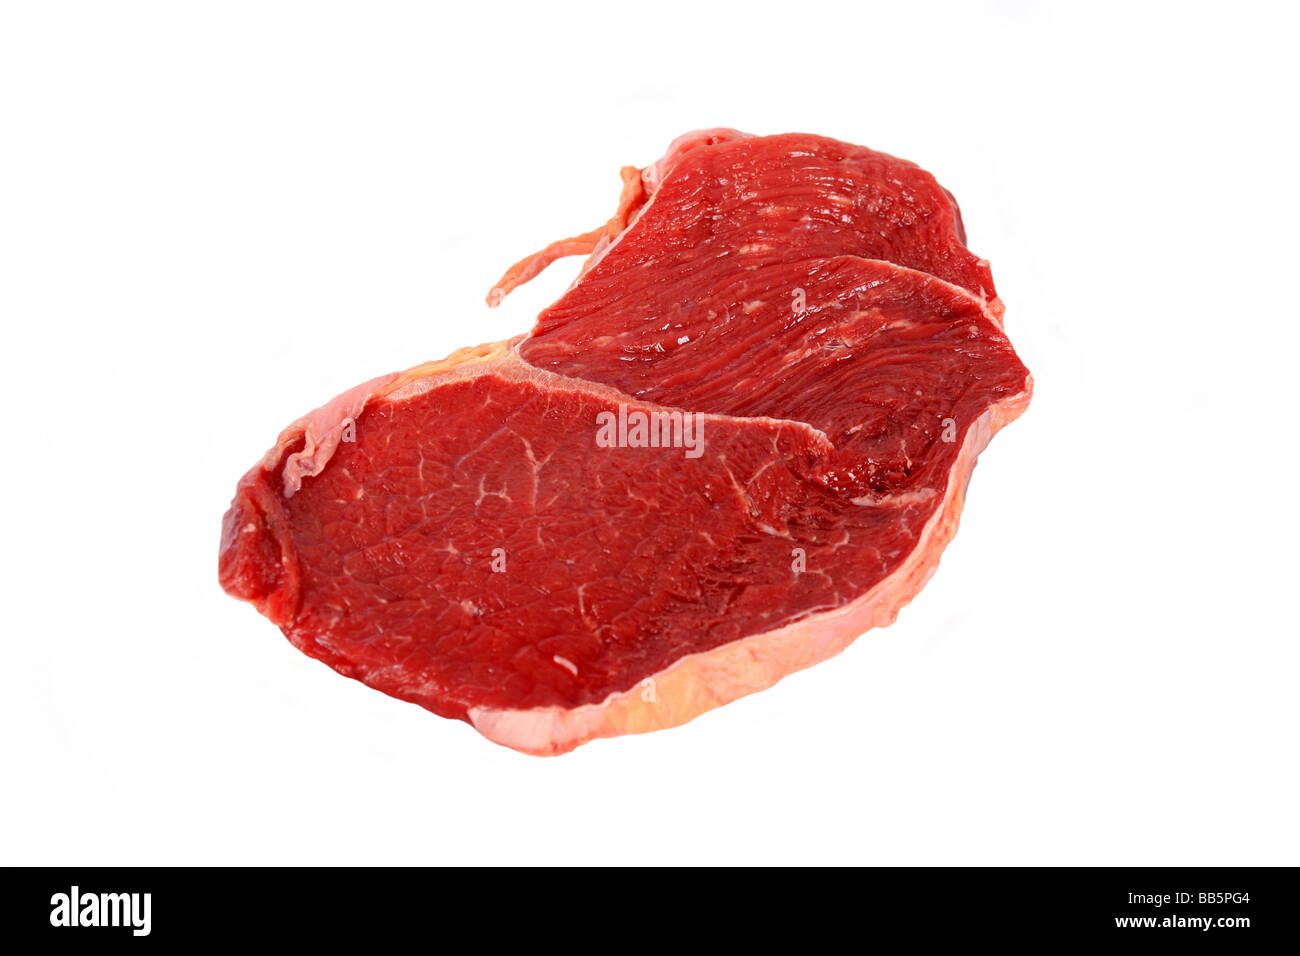 Morceau de viande steak de boeuf cru sur un fond blanc. Banque D'Images